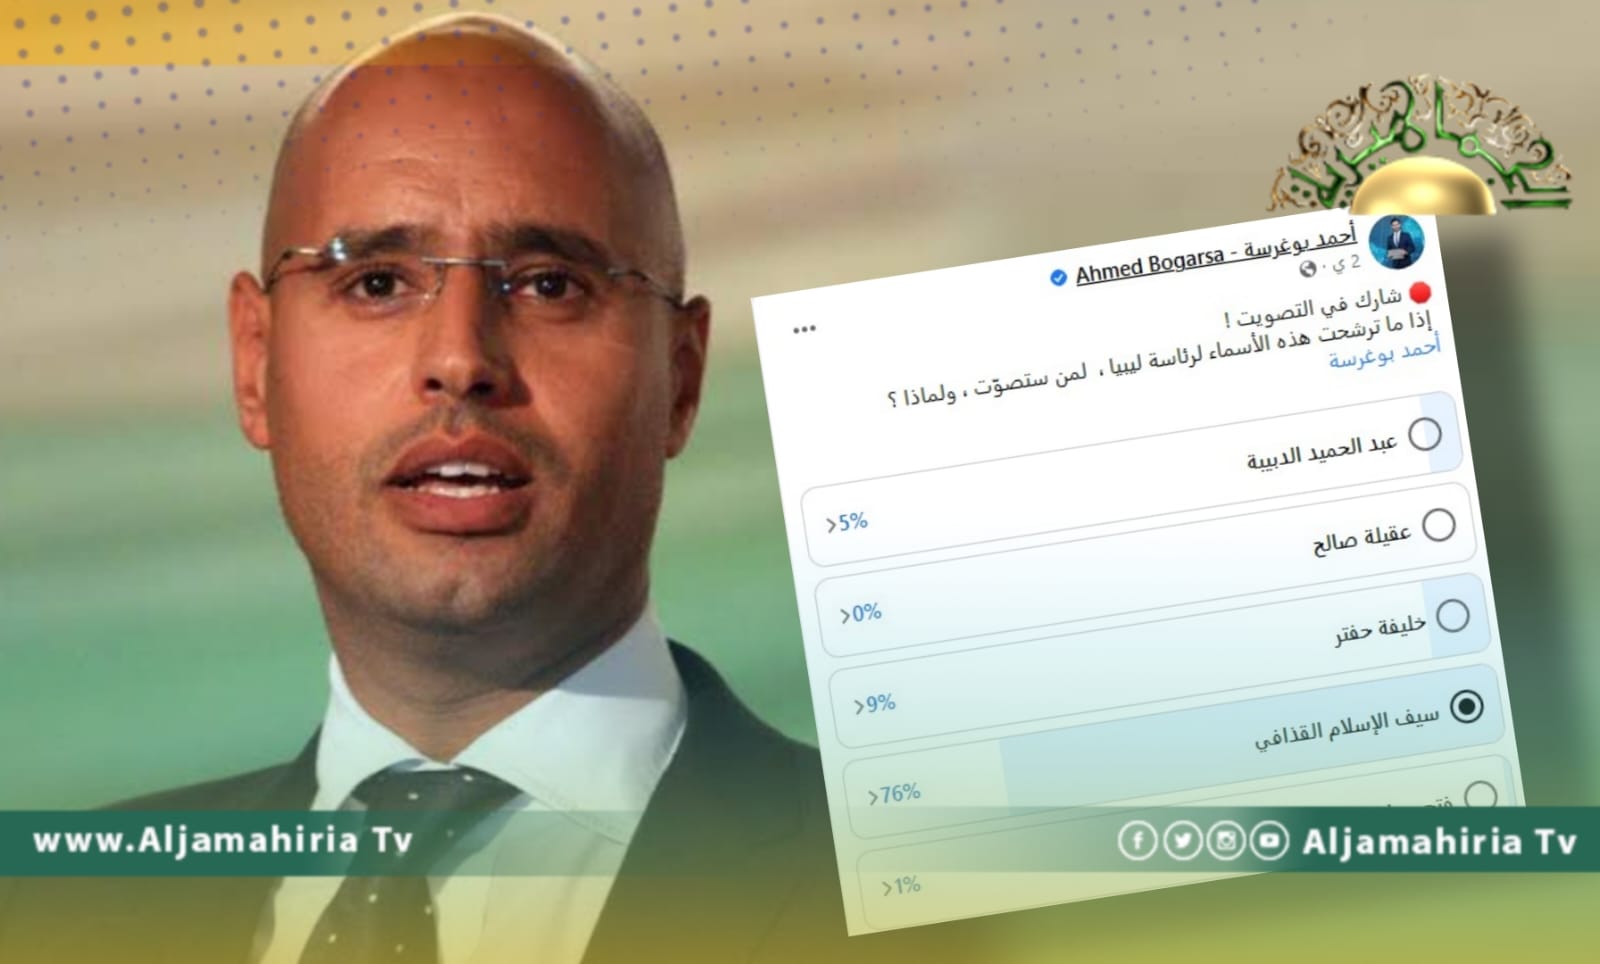 الدكتور سيف الإسلام يواصل تصدر الترتيب في تصويت إلكتروني لرئاسة ليبيا